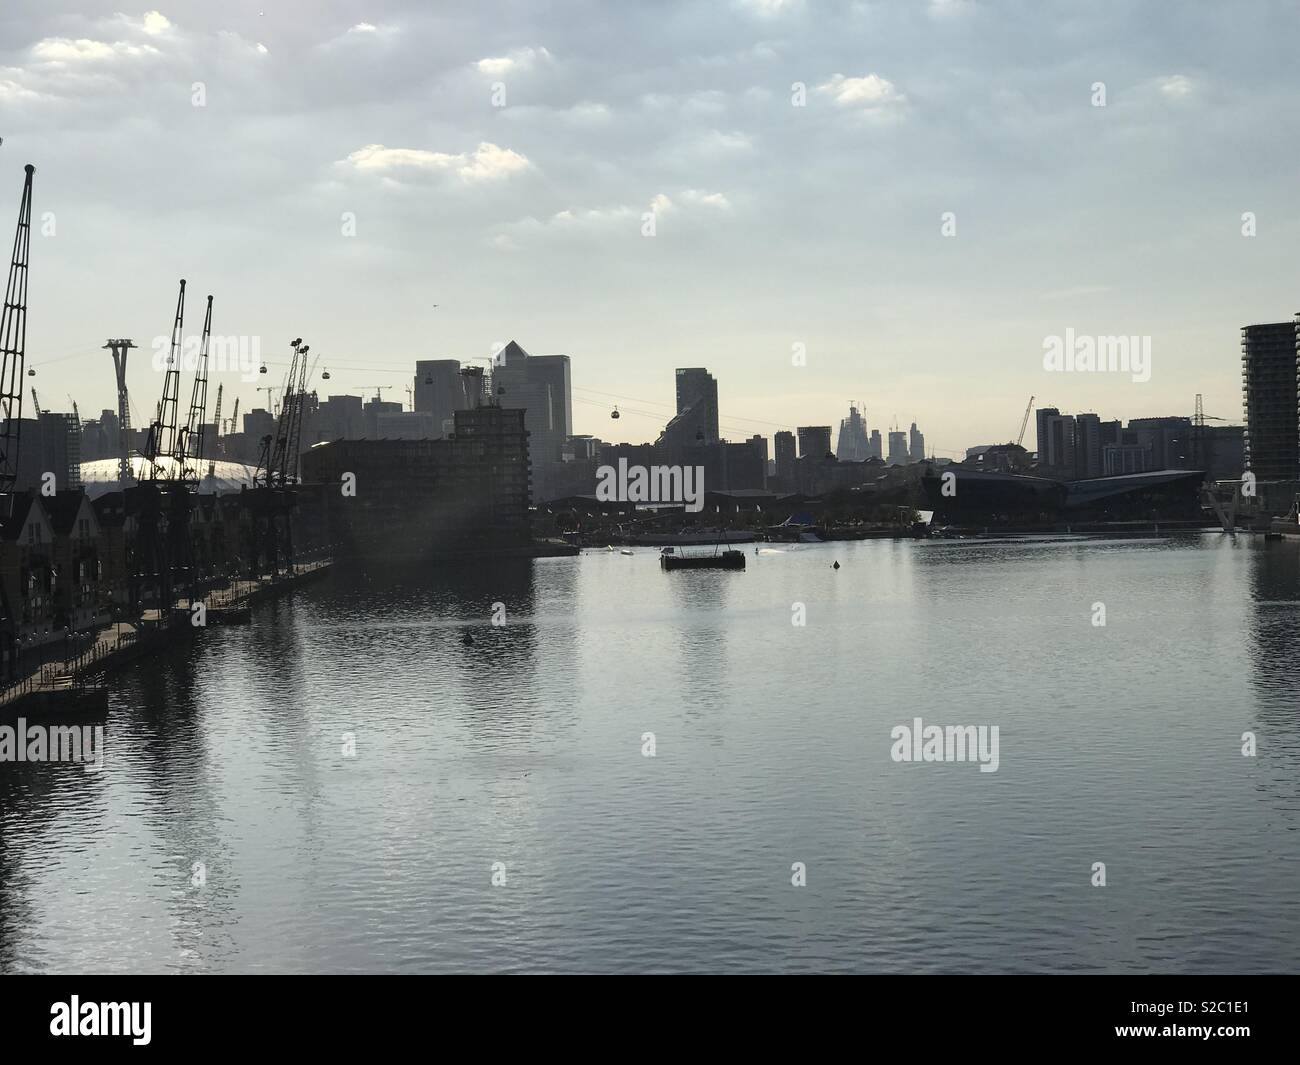 El horizonte de la ciudad de Londres desde una posición elevada. Vista de la Shard, el pepinillo, en el centro de Londres y de los teleféricos. También hay grúas y el río Támesis y a Canary Wharf y el O2 está a la izquierda Foto de stock